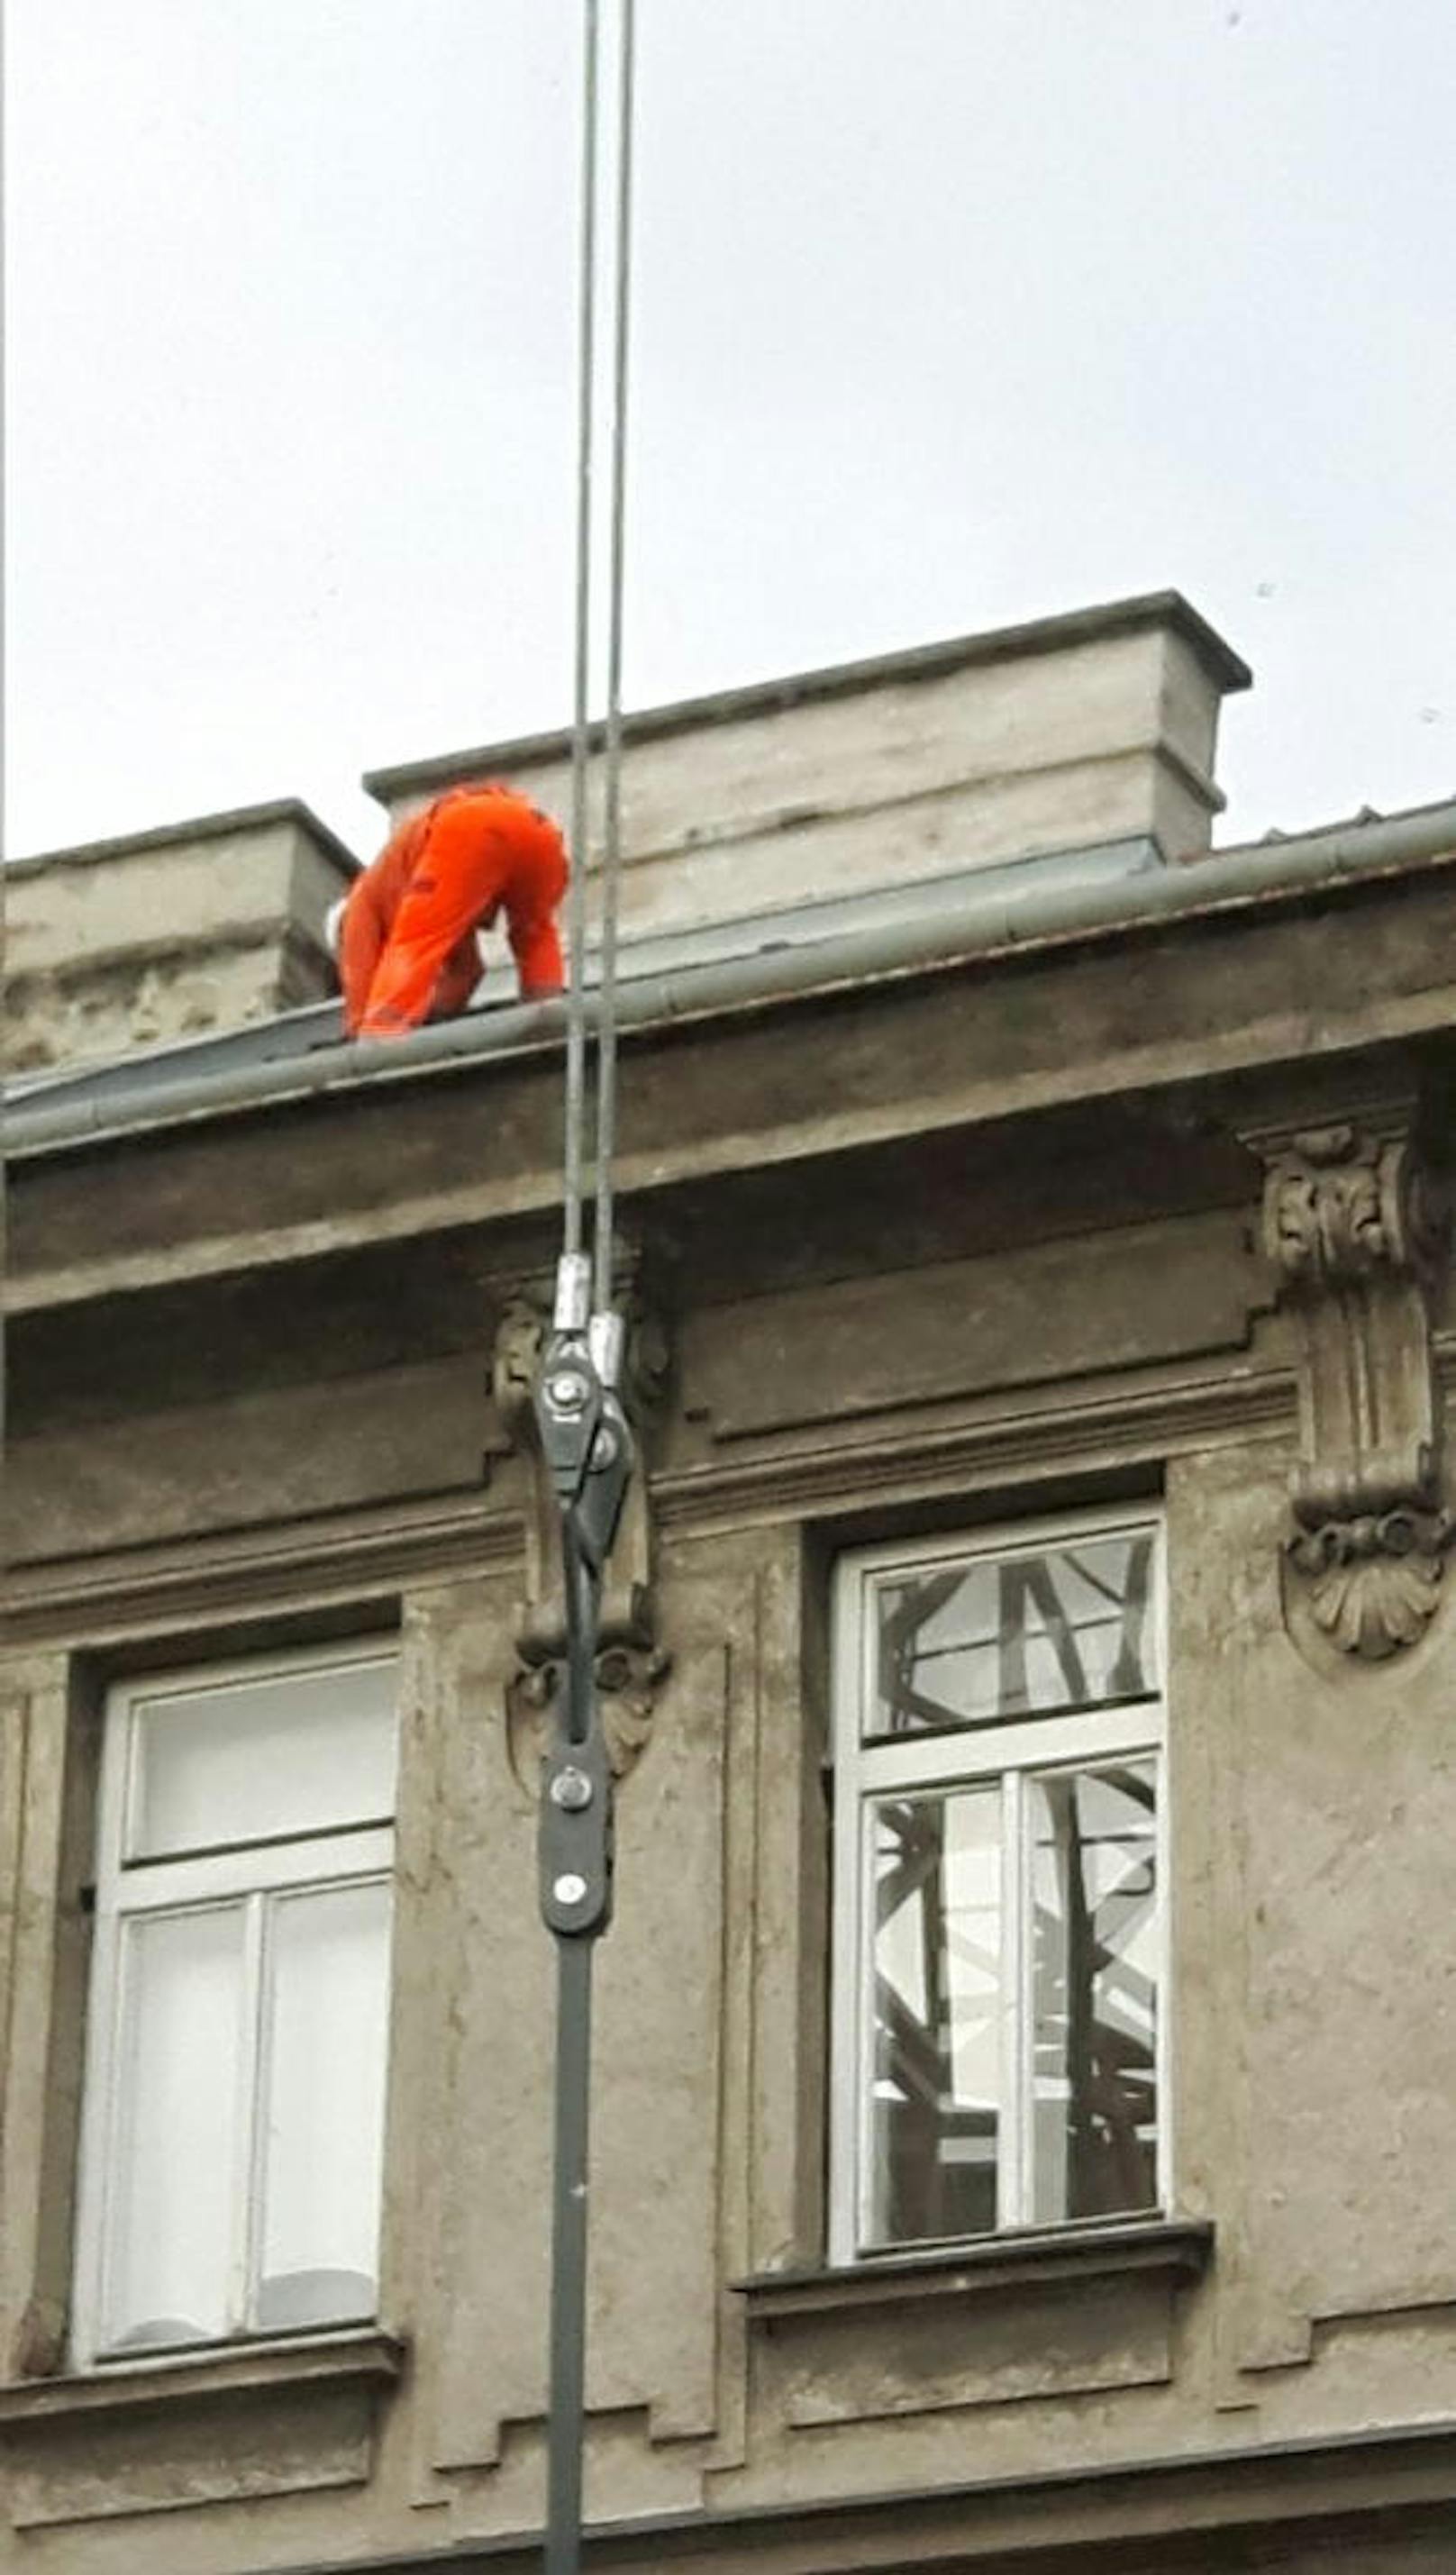 Vollkommen ungesichert arbeitet der Mann in Orange in schwindelerregender Höhe auf dem Dach eines Wiener Wohnhauses.